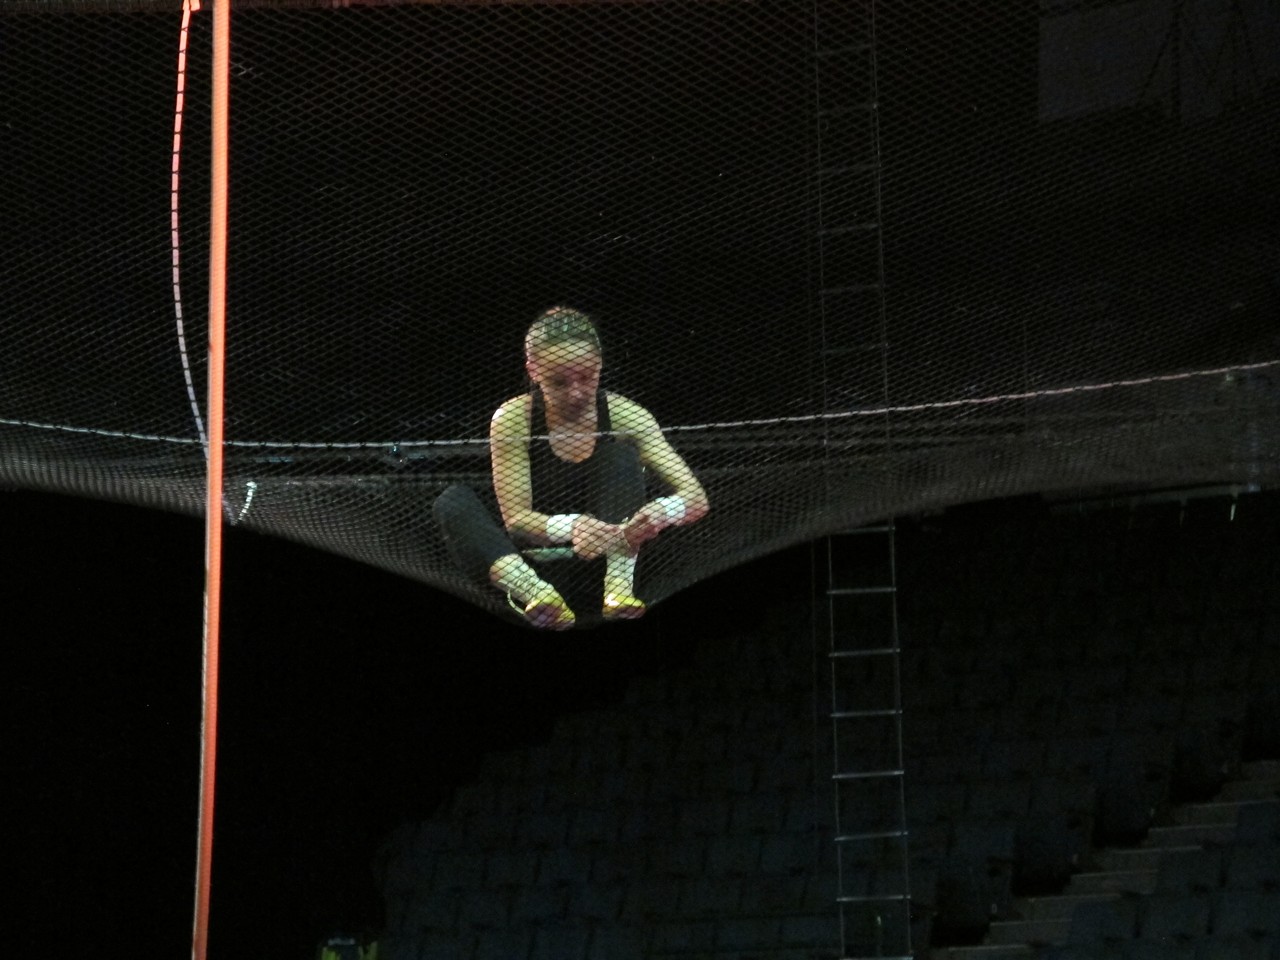 Photos of Cirque du Soleil Rehearsals at Wolstein Center